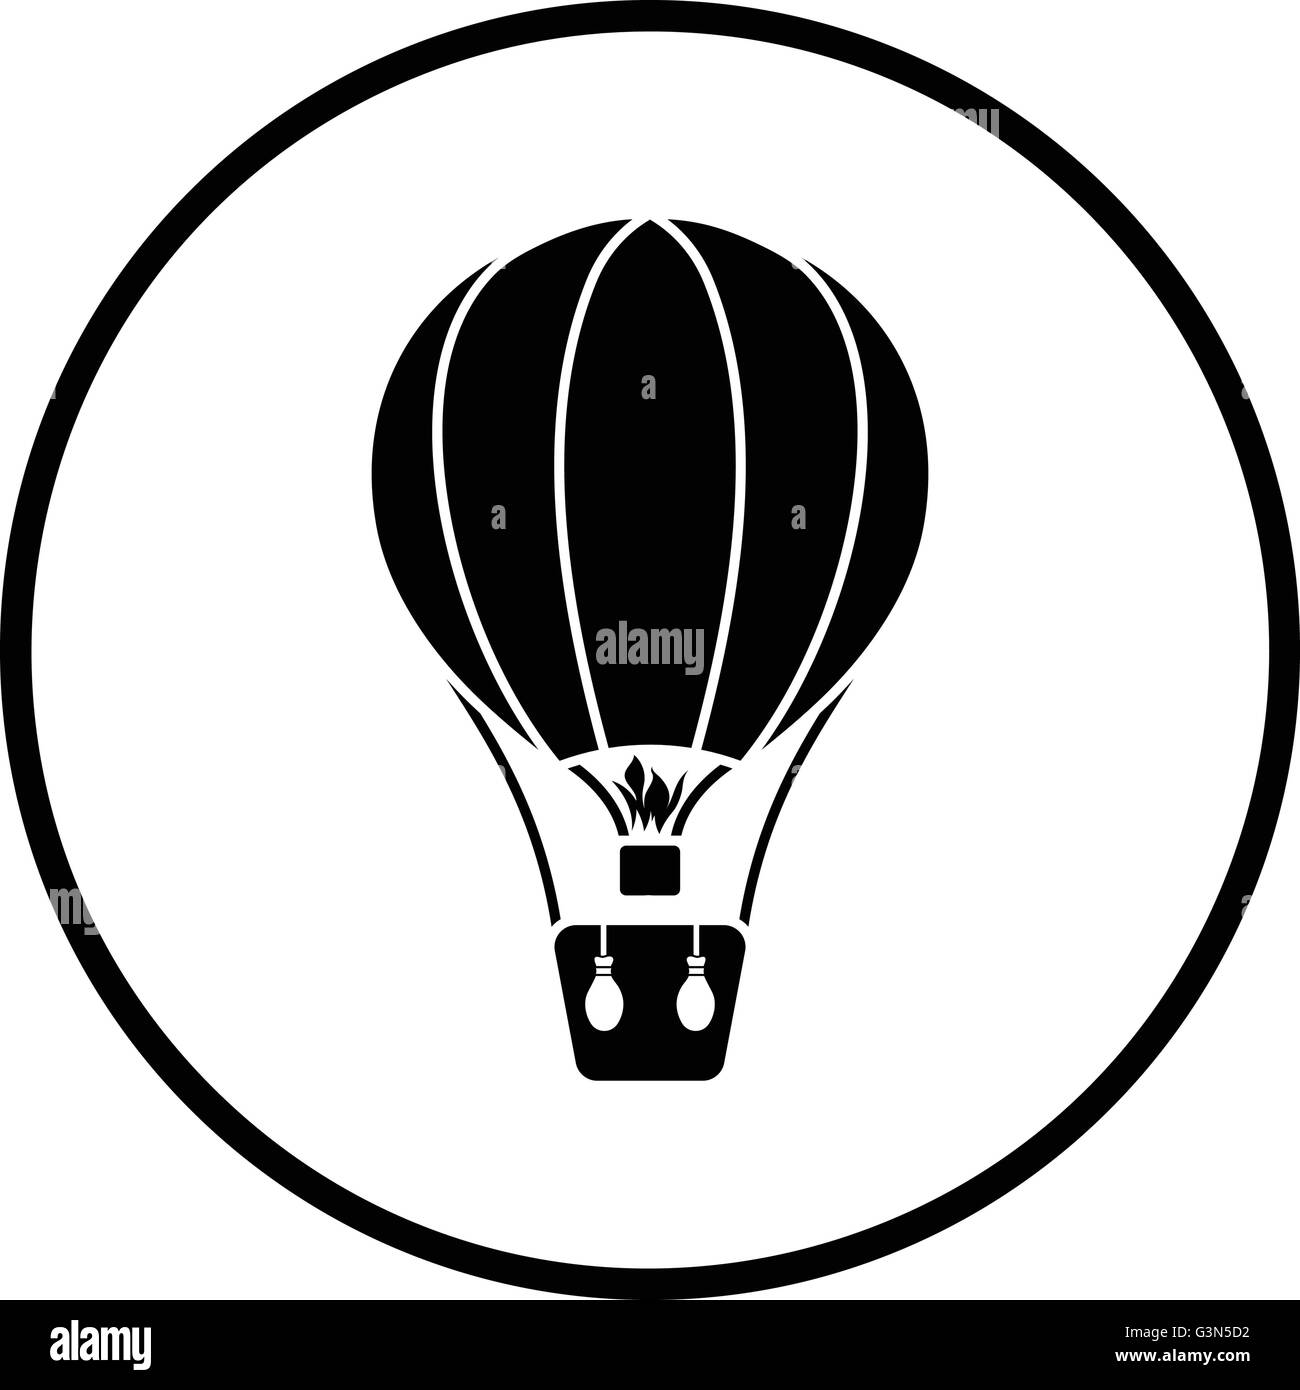 Hot air balloon icon. Thin circle design. Vector illustration. Stock Vector